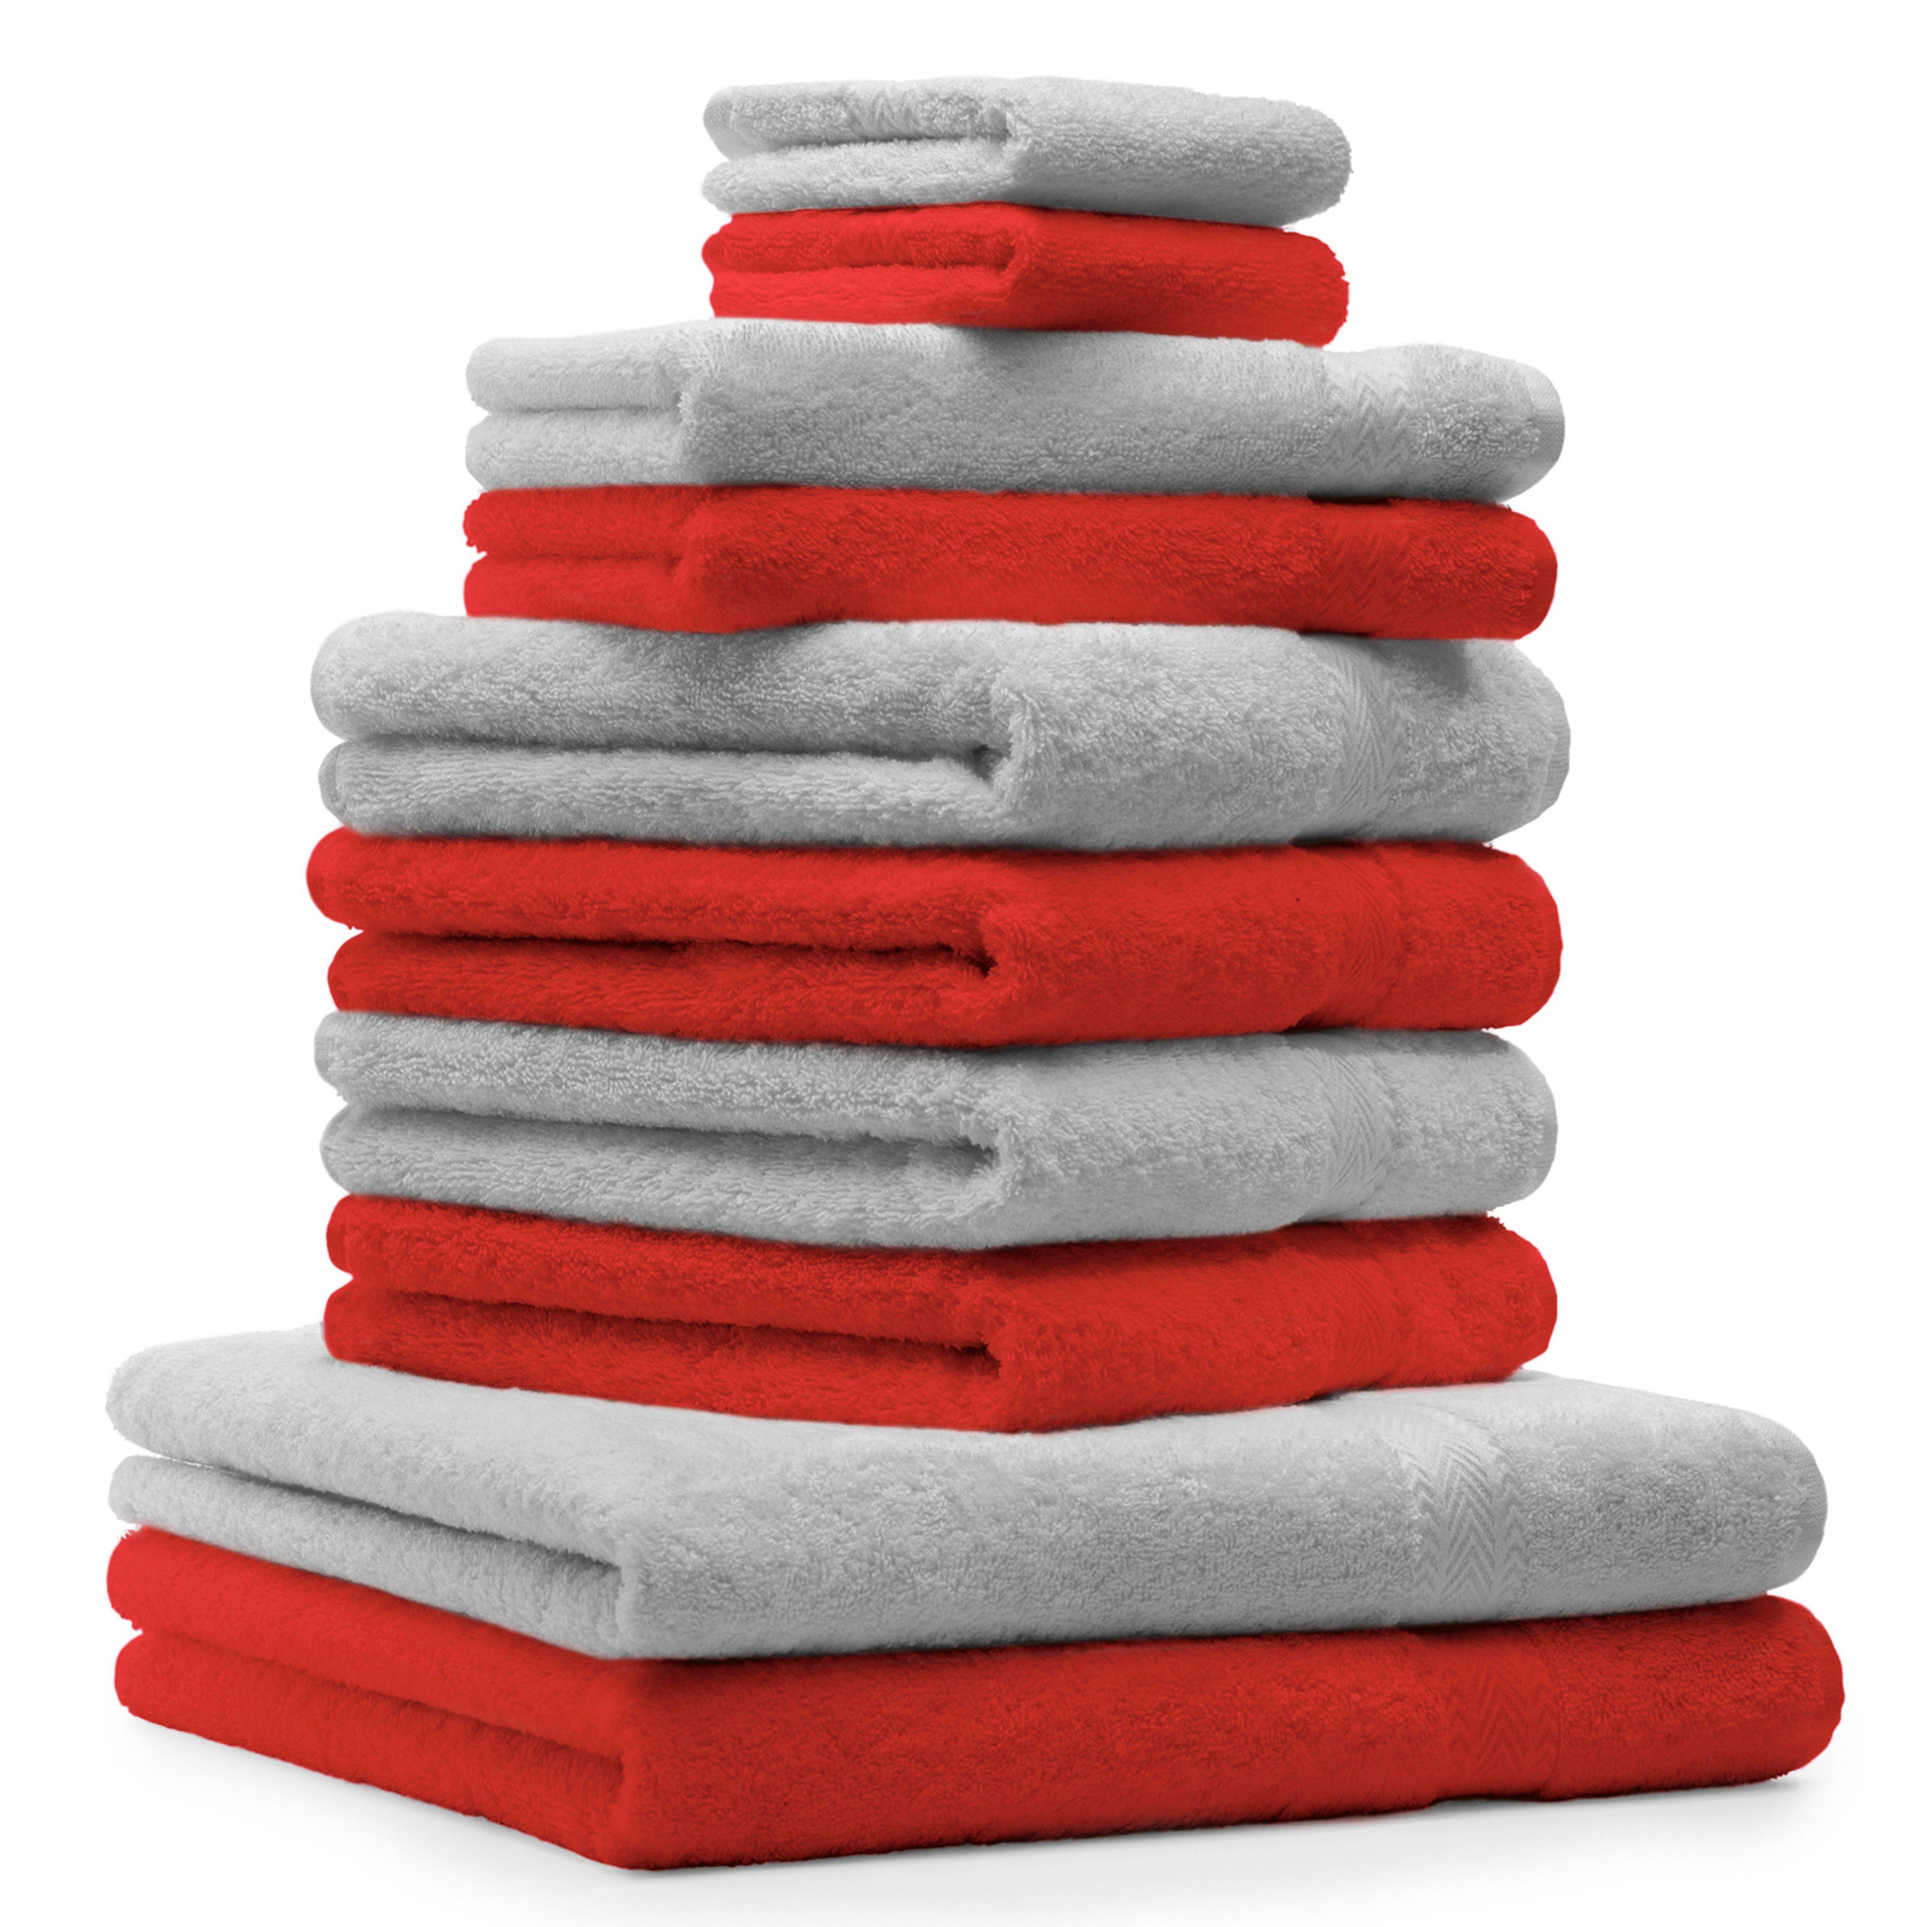 Betz Handtuch Set 10-TLG. Handtuch-Set Classic Farbe rot und silbergrau, 100% Baumwolle